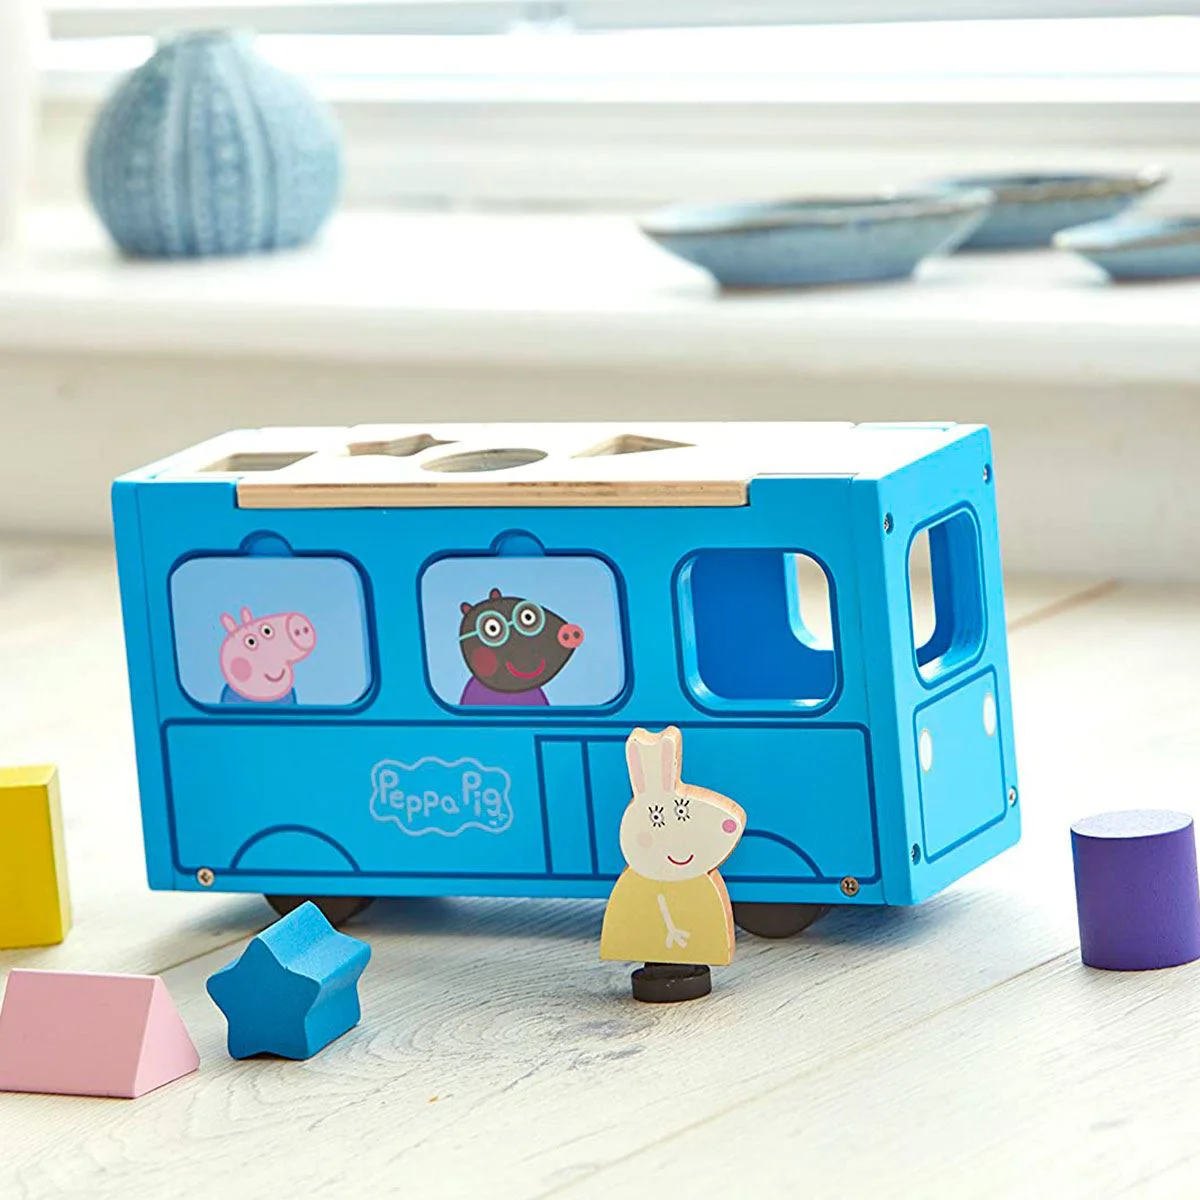 Set de joaca din lemn Peppa Pig Autobuz-Sorter cu accesorii si figurina